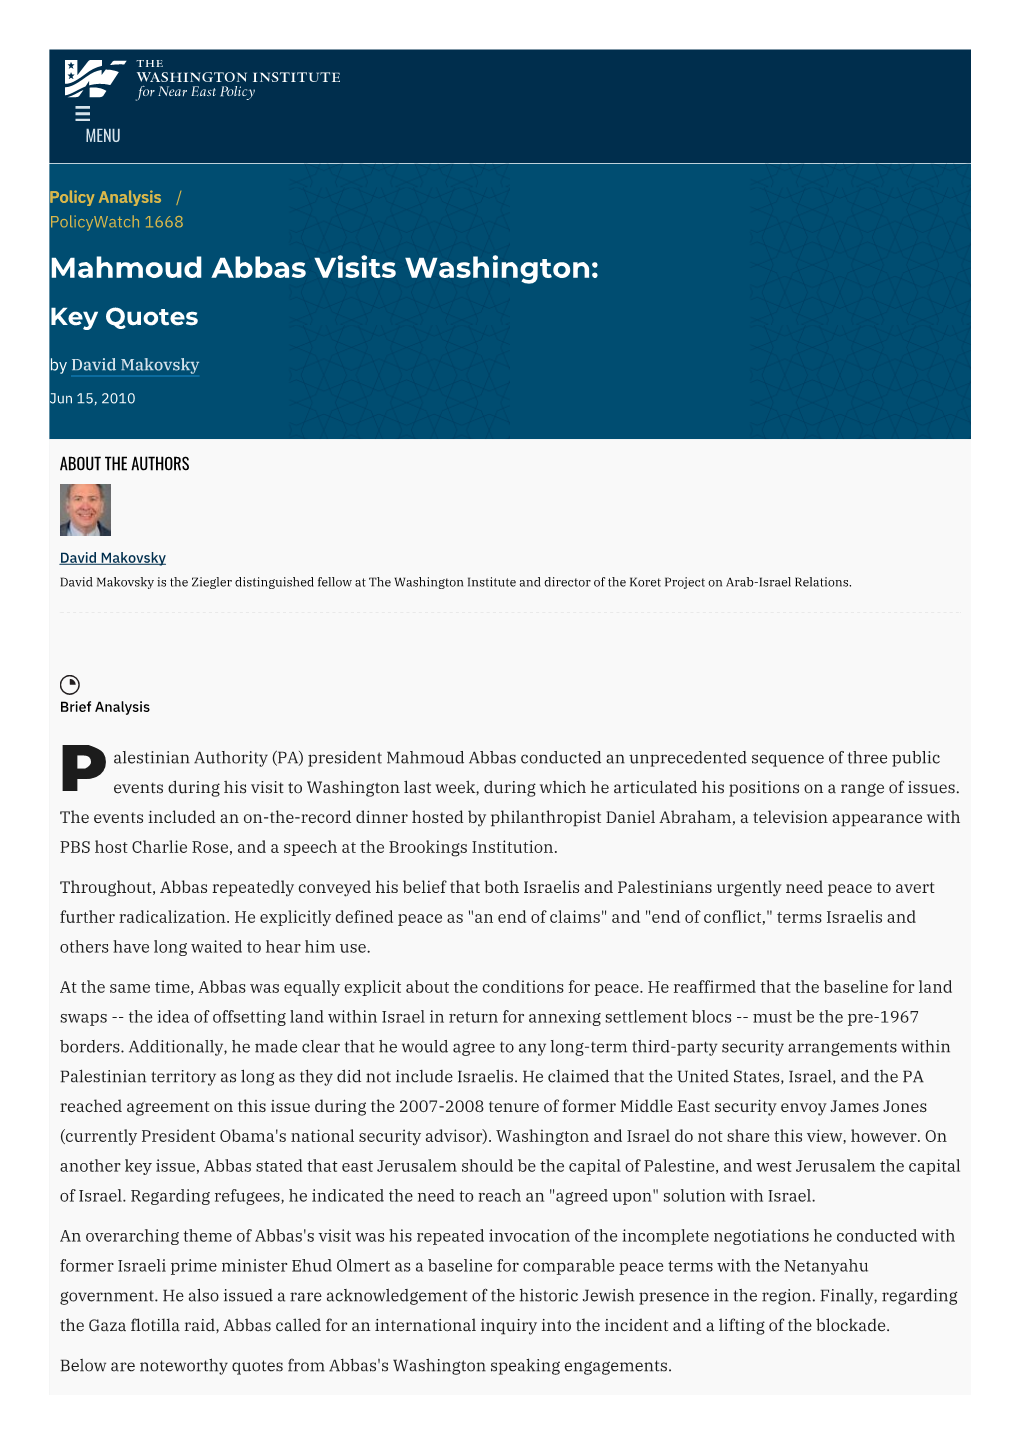 Mahmoud Abbas Visits Washington: Key Quotes | the Washington Institute